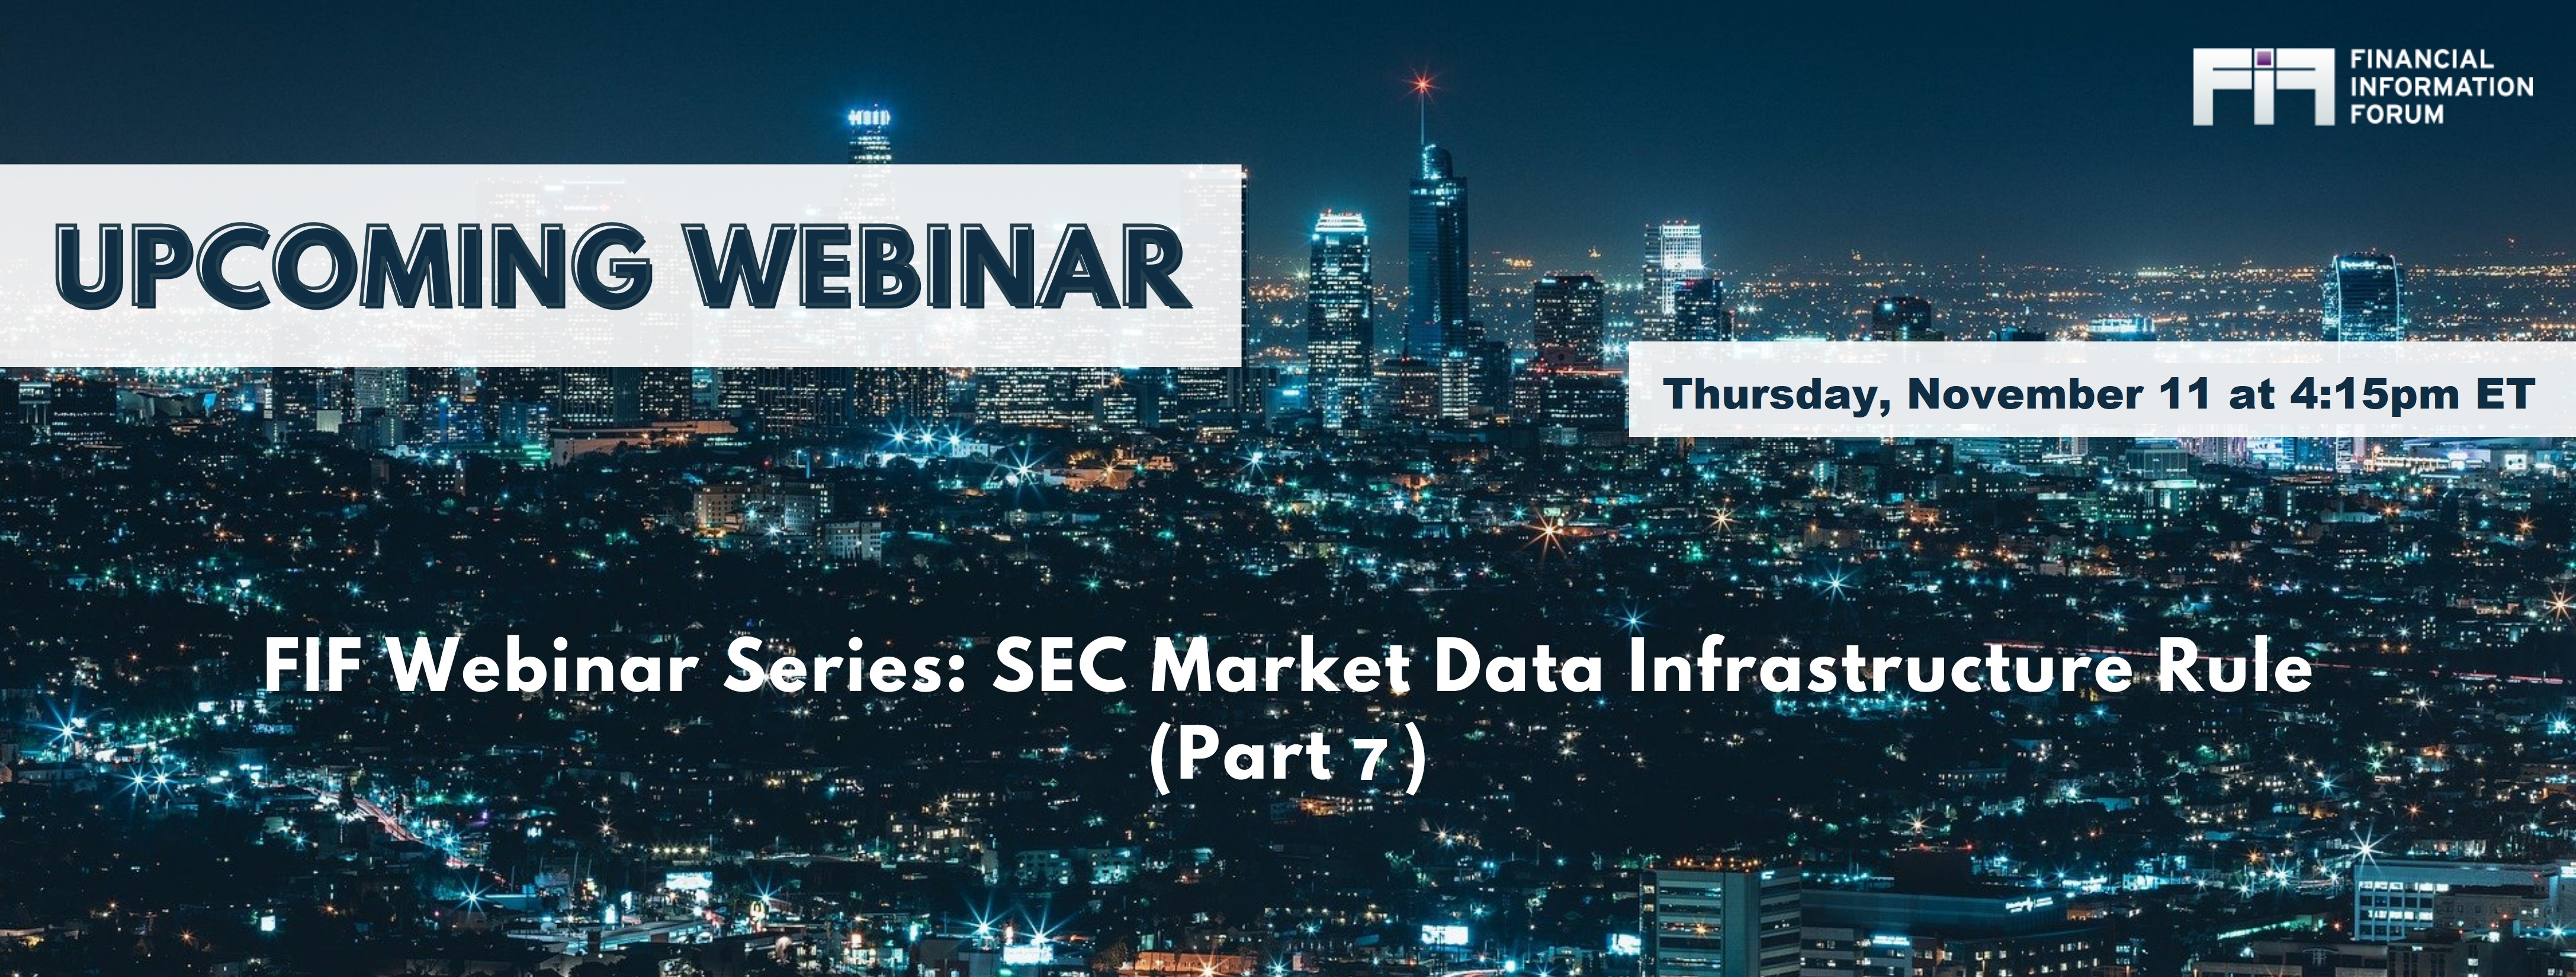 SEC Market Data Infrastructure Rule Webinar 7.jpg